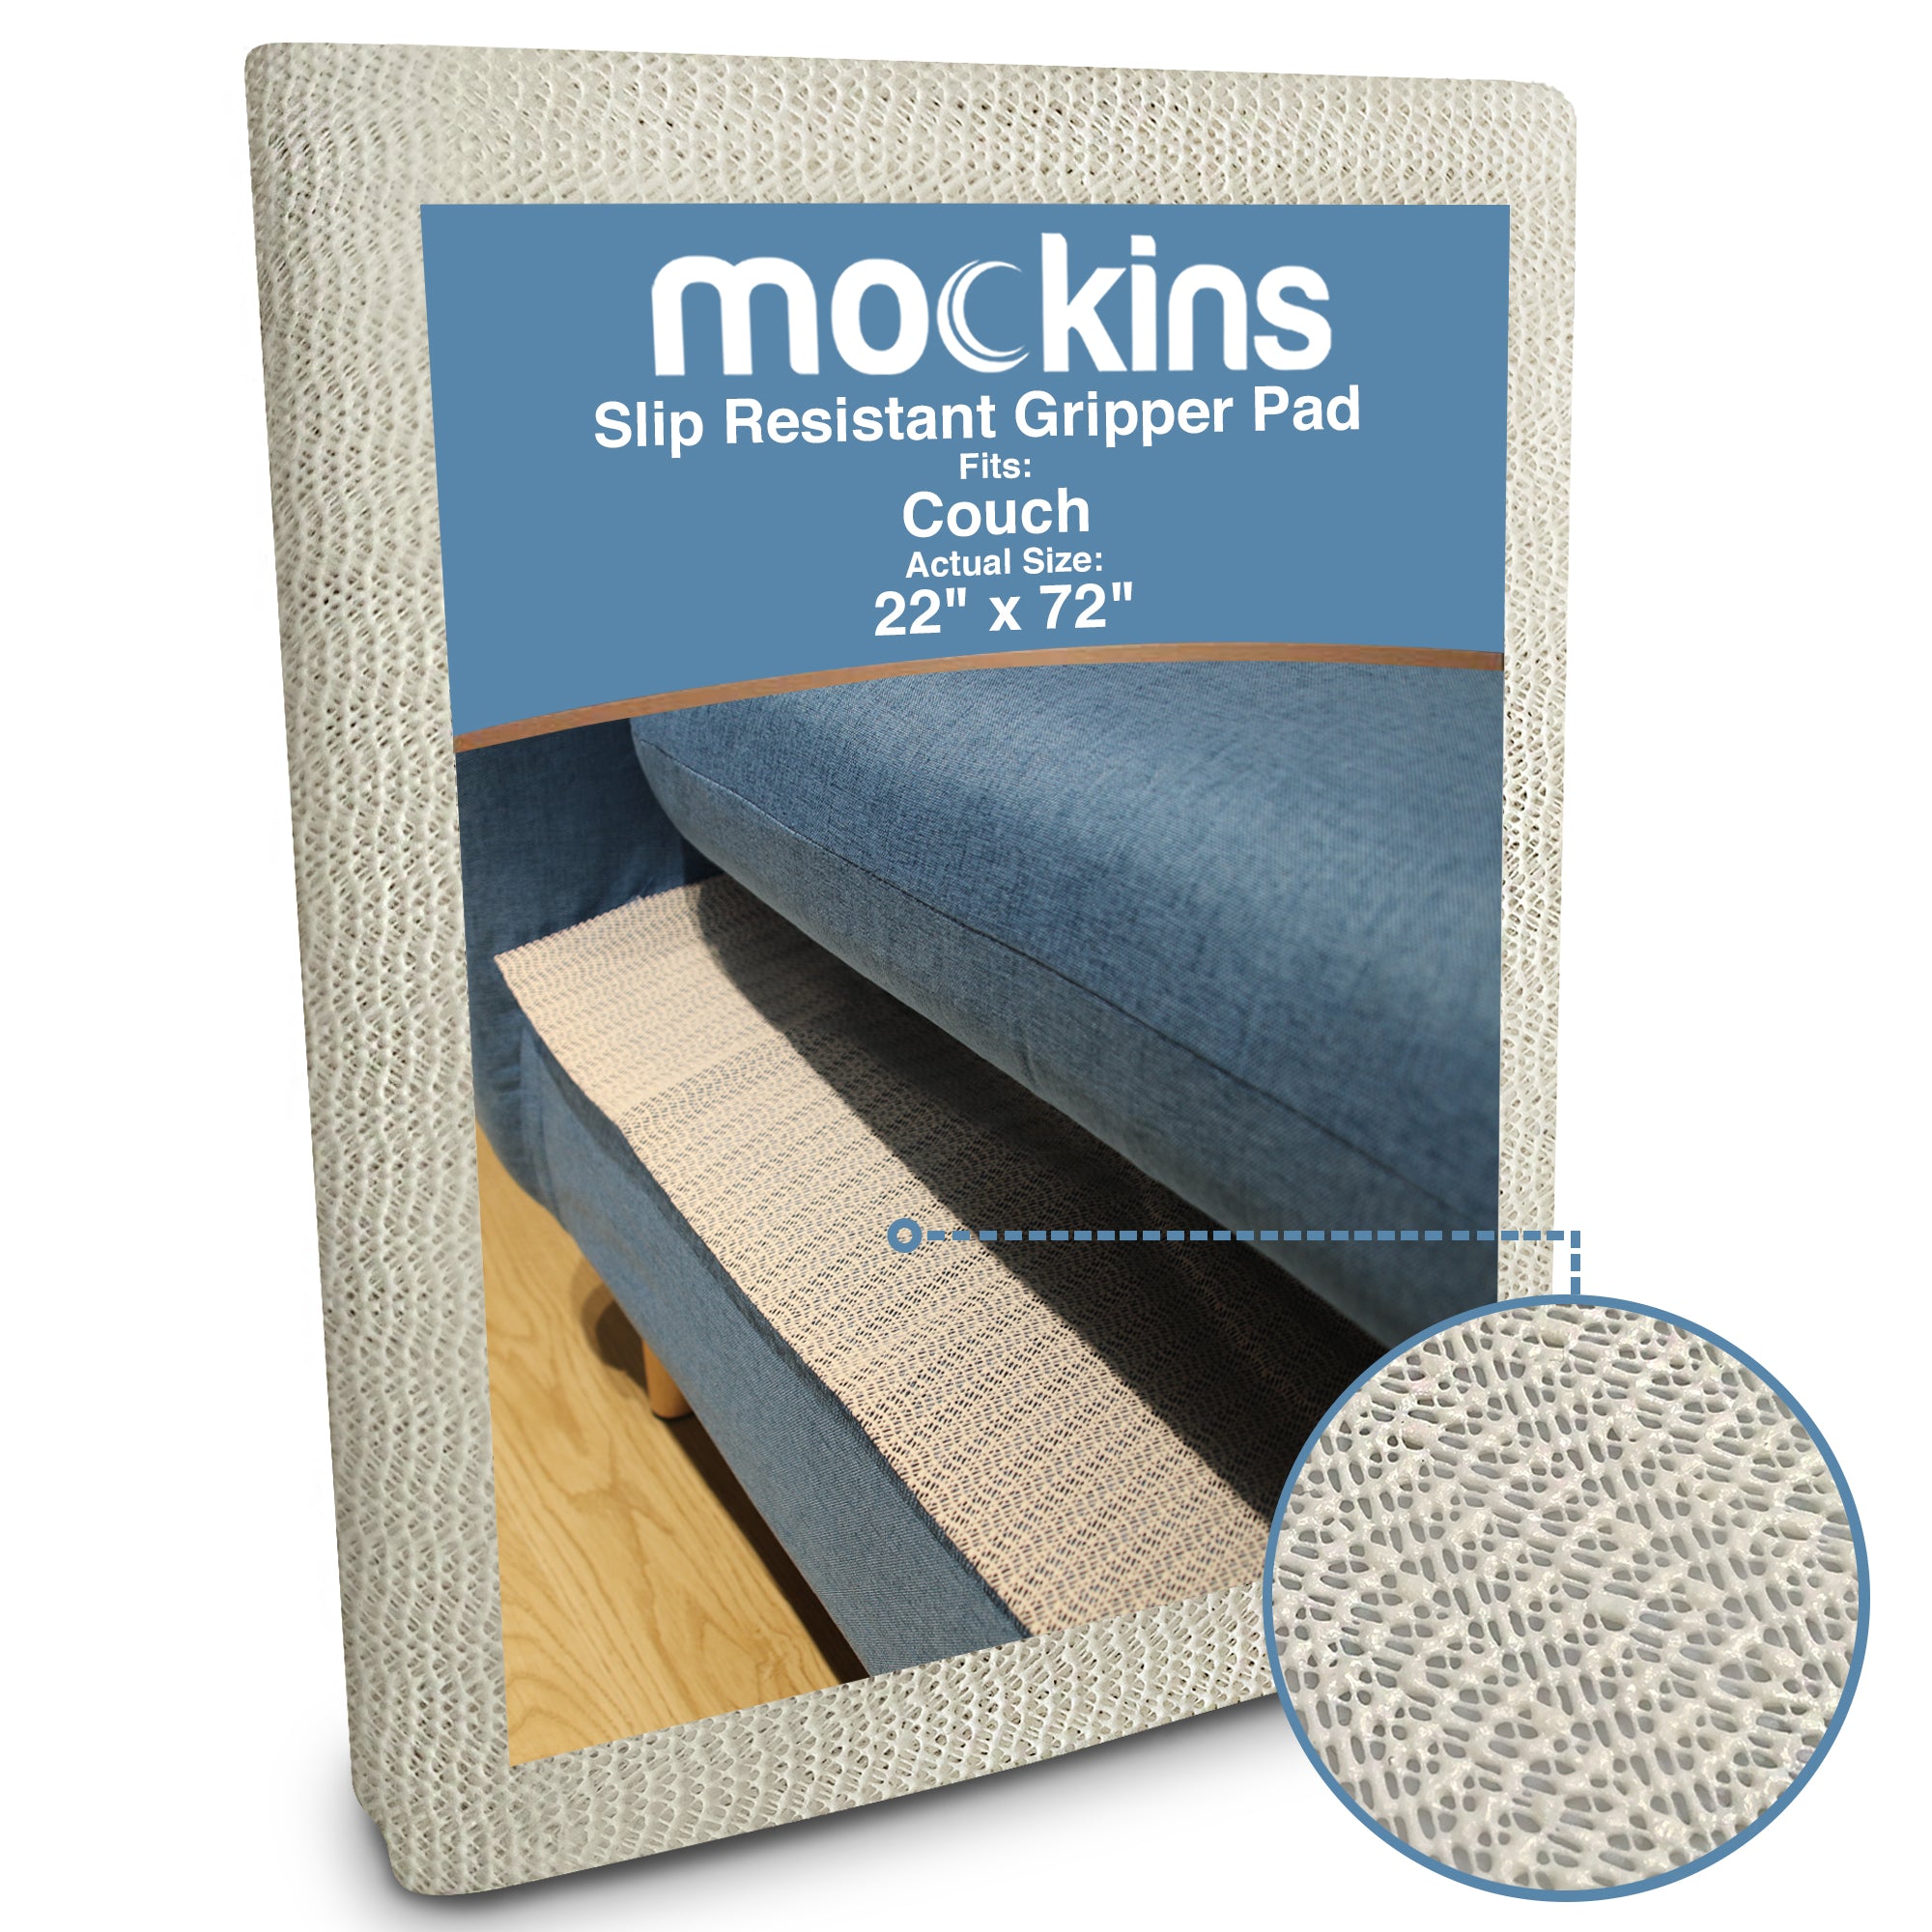 Mockins Black Rug Pad 8' x 10